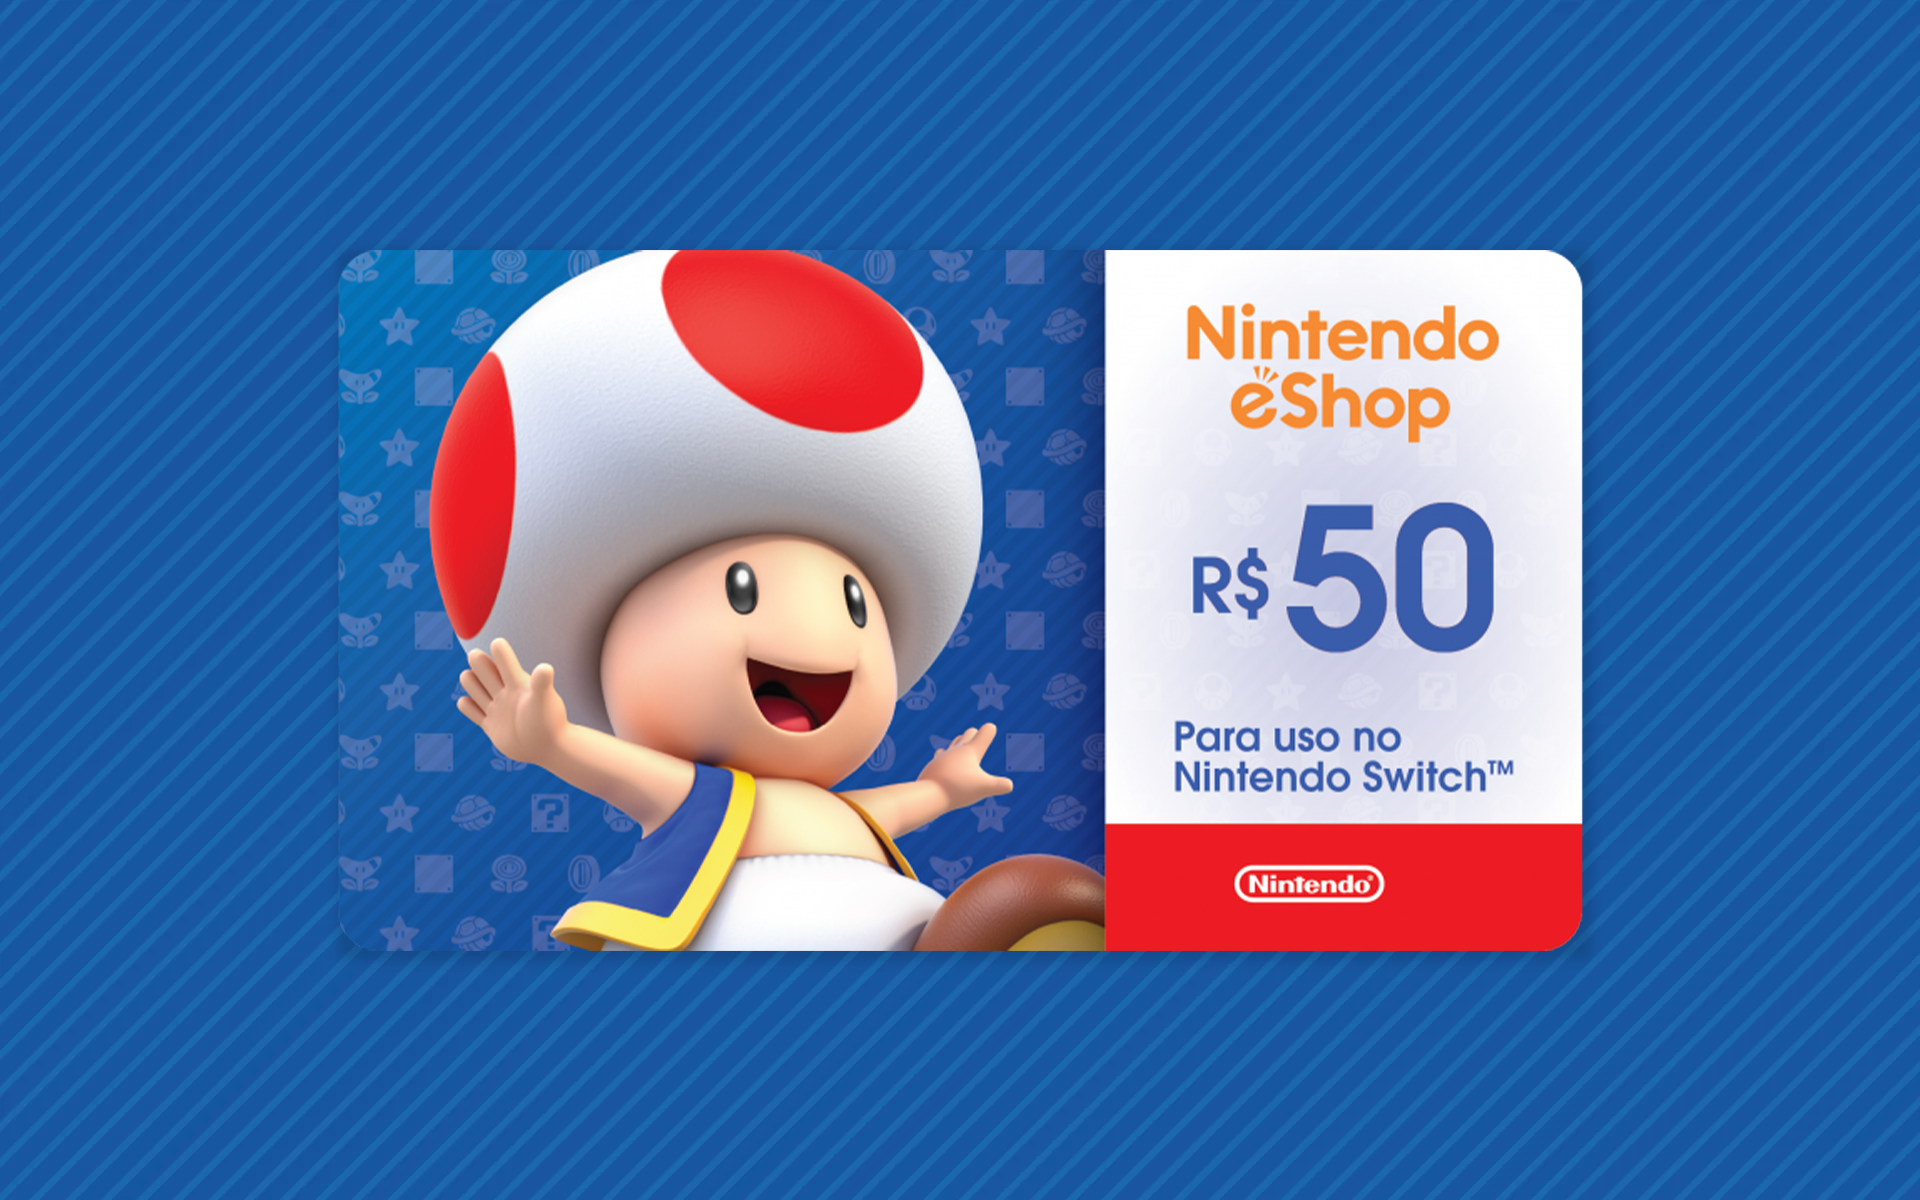 Comprar Cartão Nintendo eShop - Crédito $50 Dólares